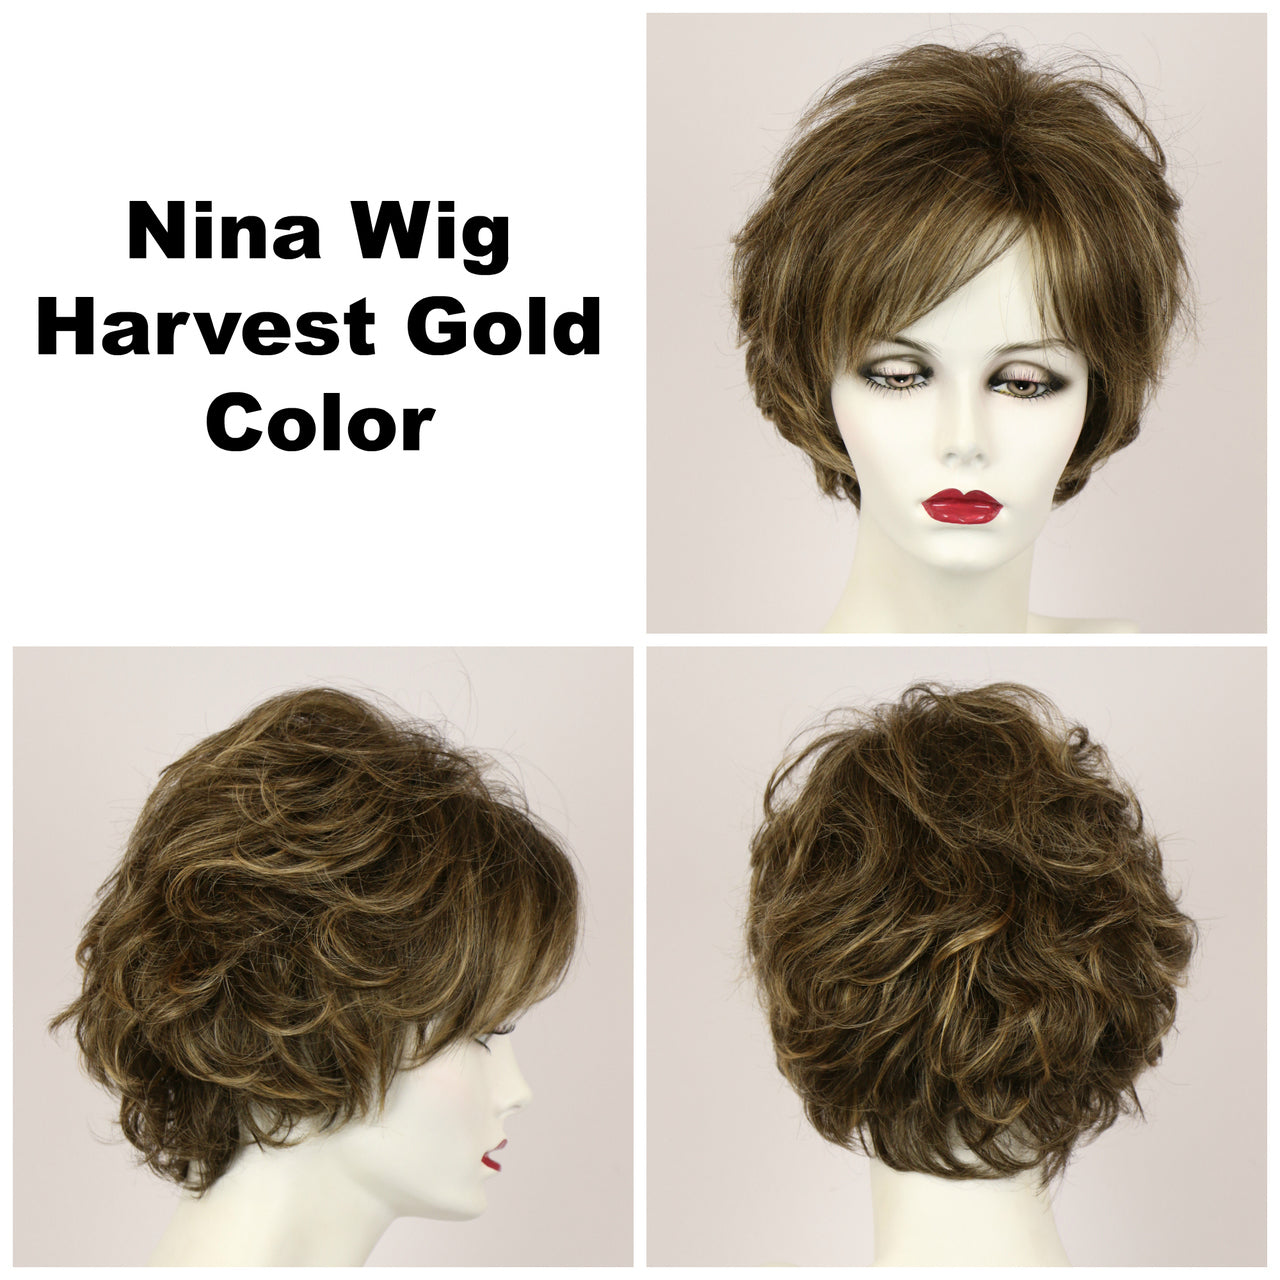 Harvest Gold / Nina / Medium Wig